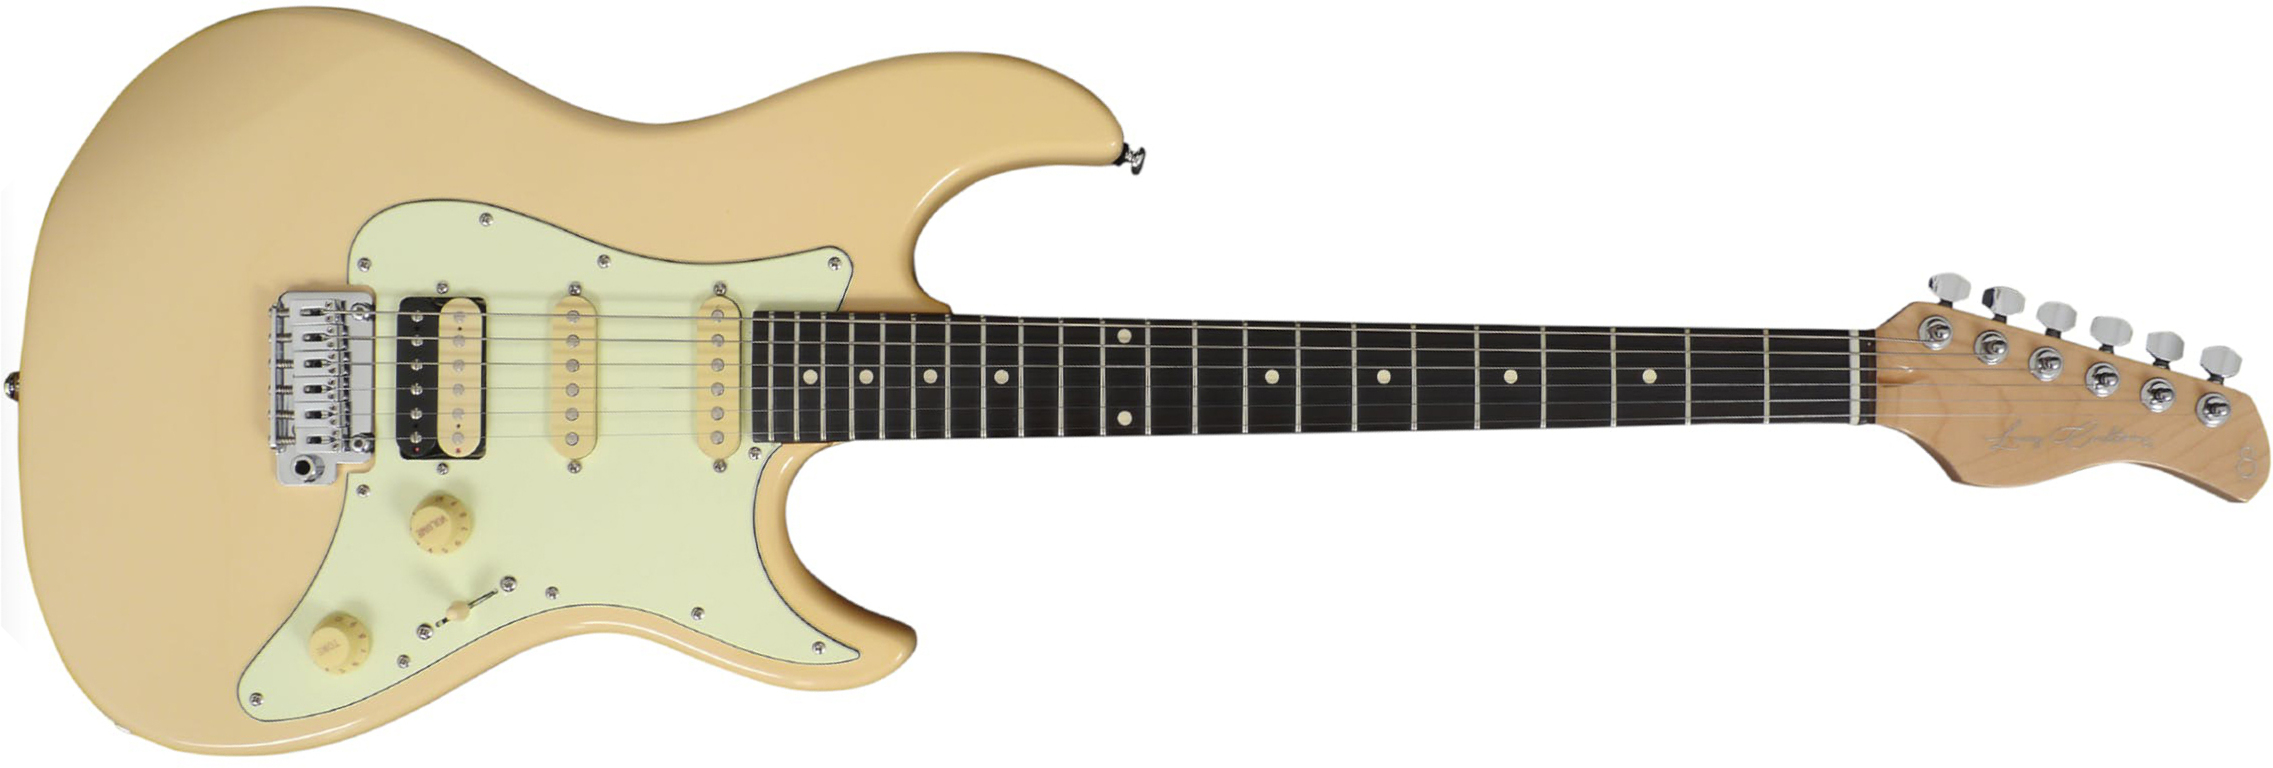 Sire Larry Carlton S3 Signature Hss Trem Rw - Vintage White - Guitarra eléctrica con forma de str. - Main picture